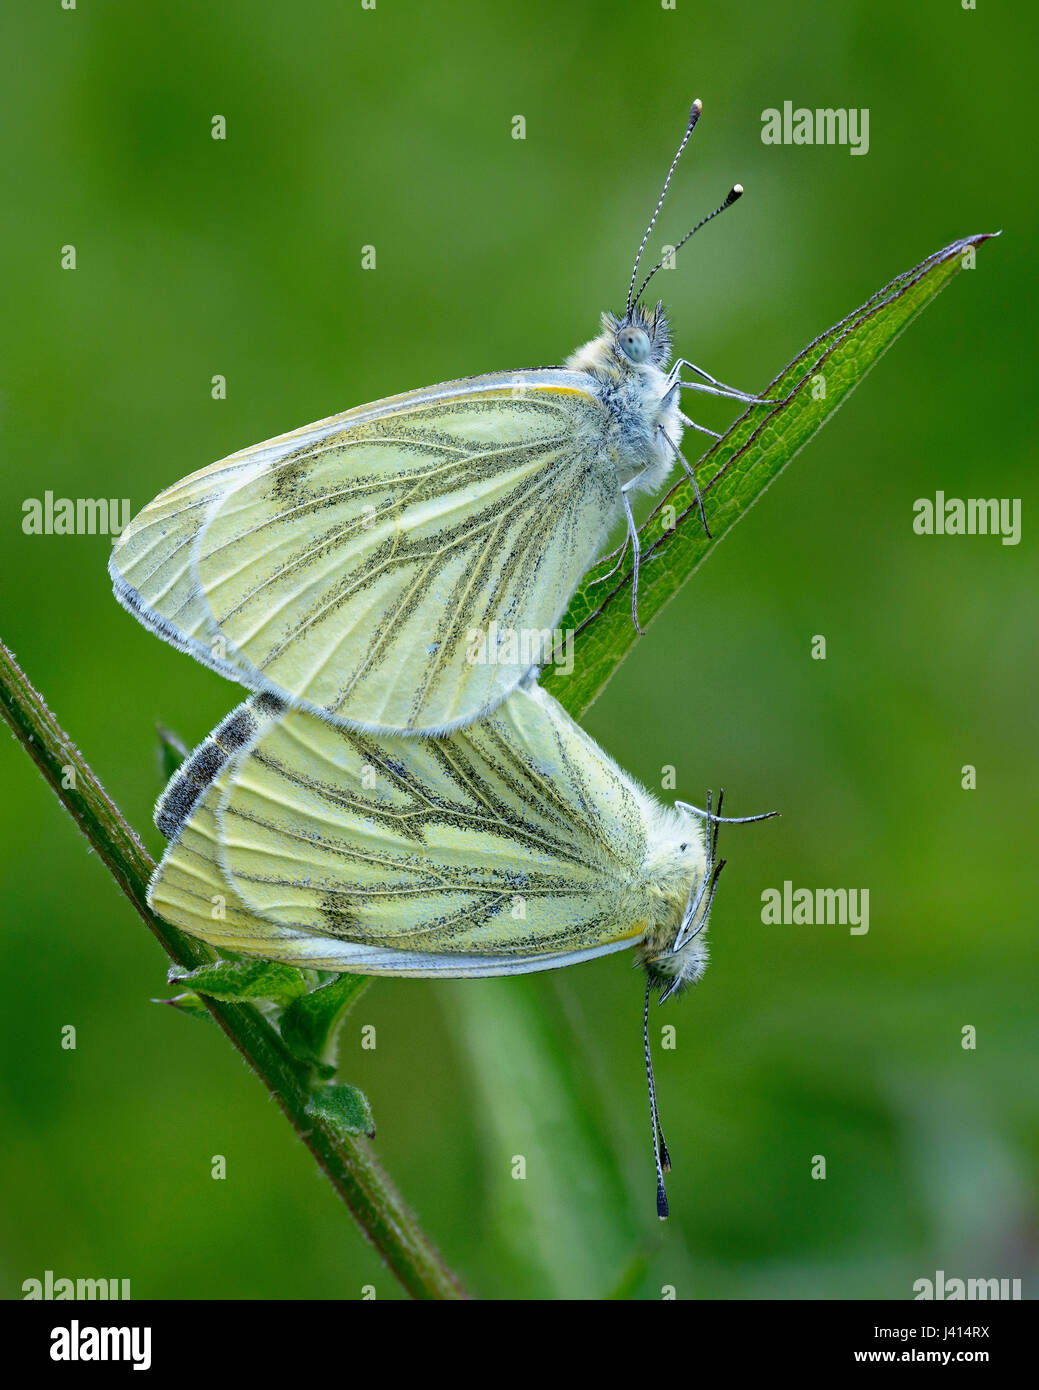 Blanc veiné vert-papillons (Pieris napi) l'accouplement, Lancashire UK. Focus-stacked close-up image. Banque D'Images